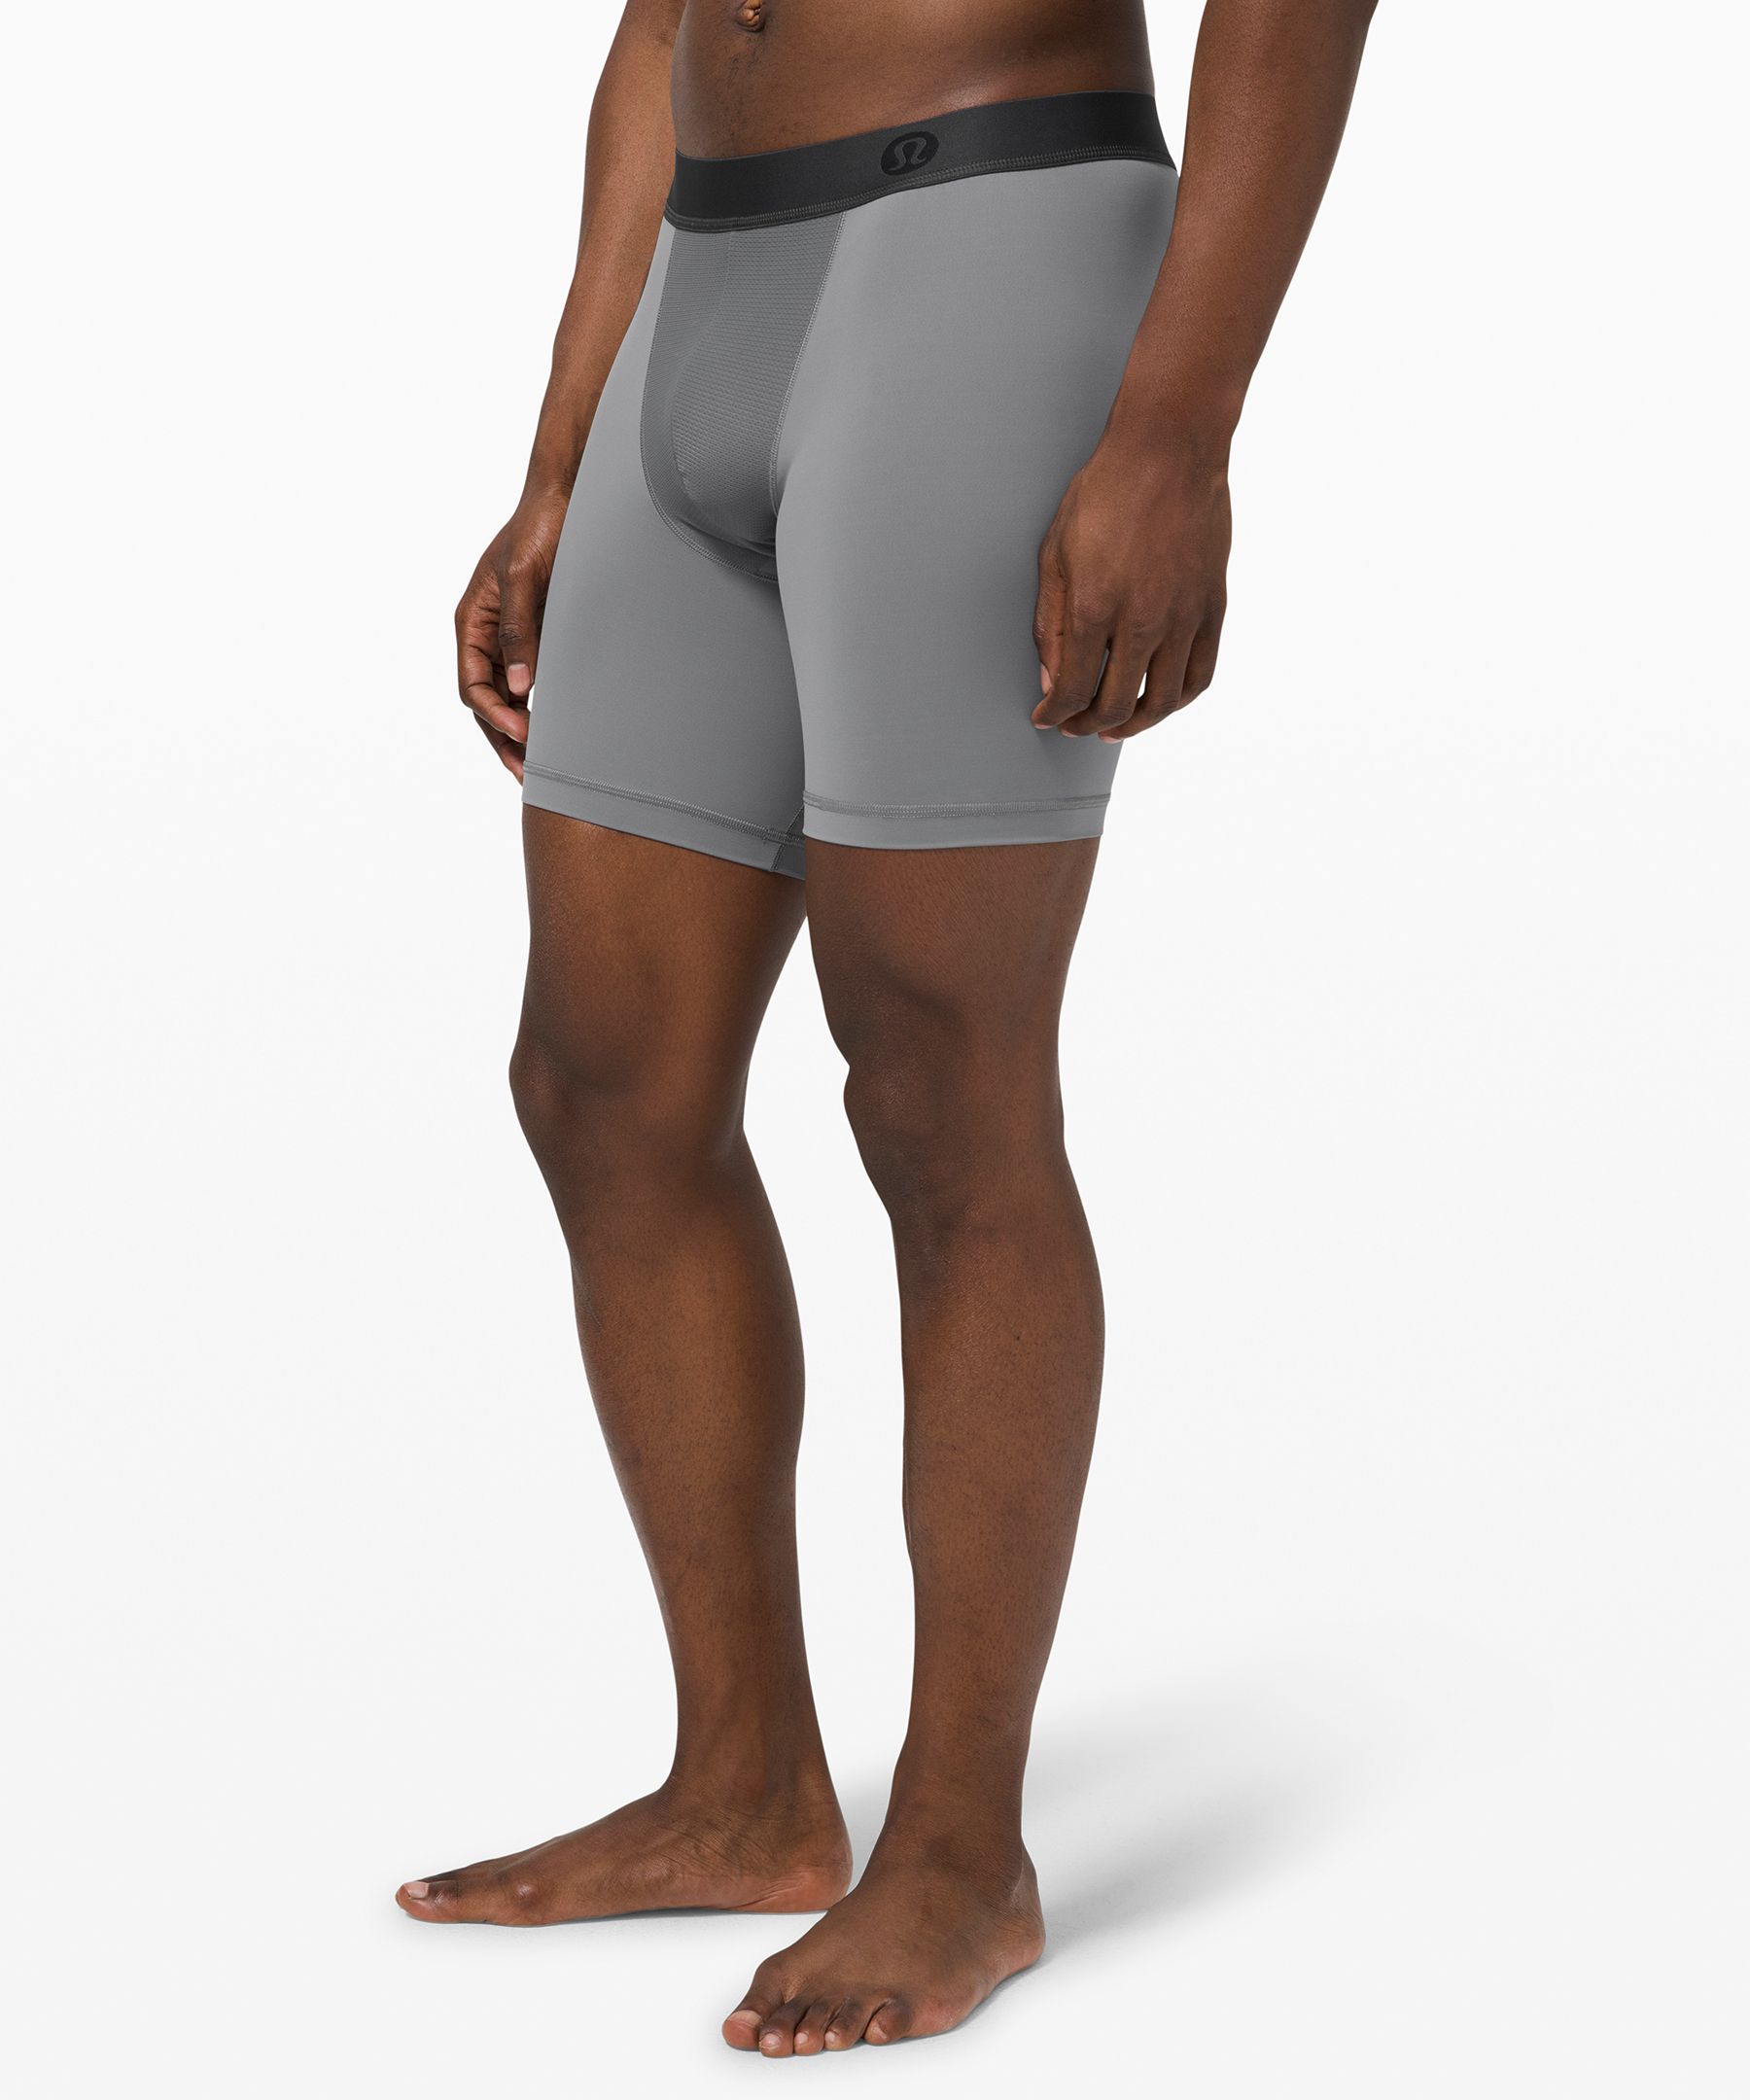 lululemon boxer shorts